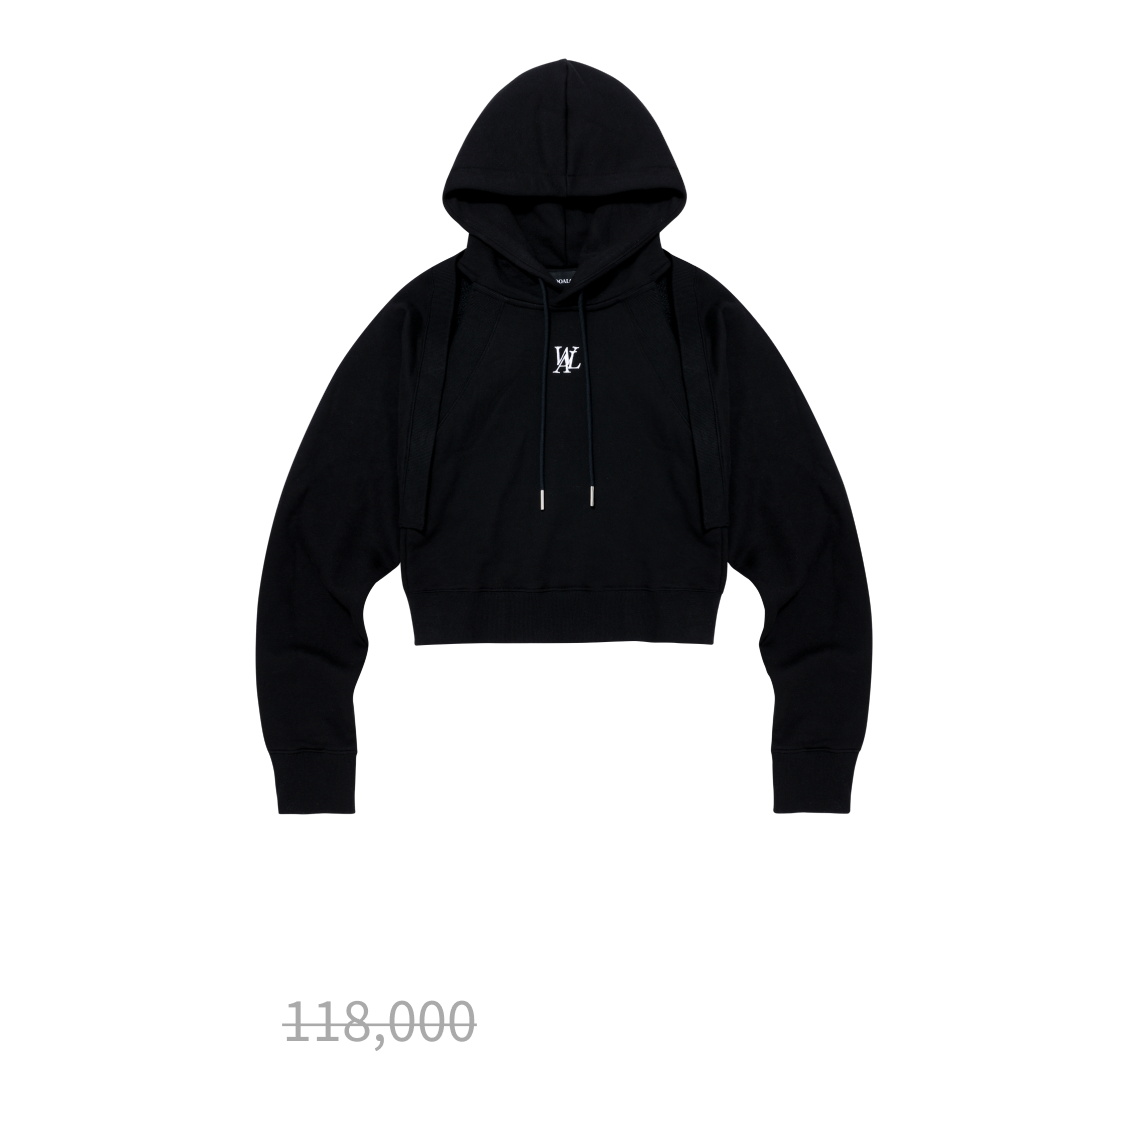 Hood bolero set-up - BLACK